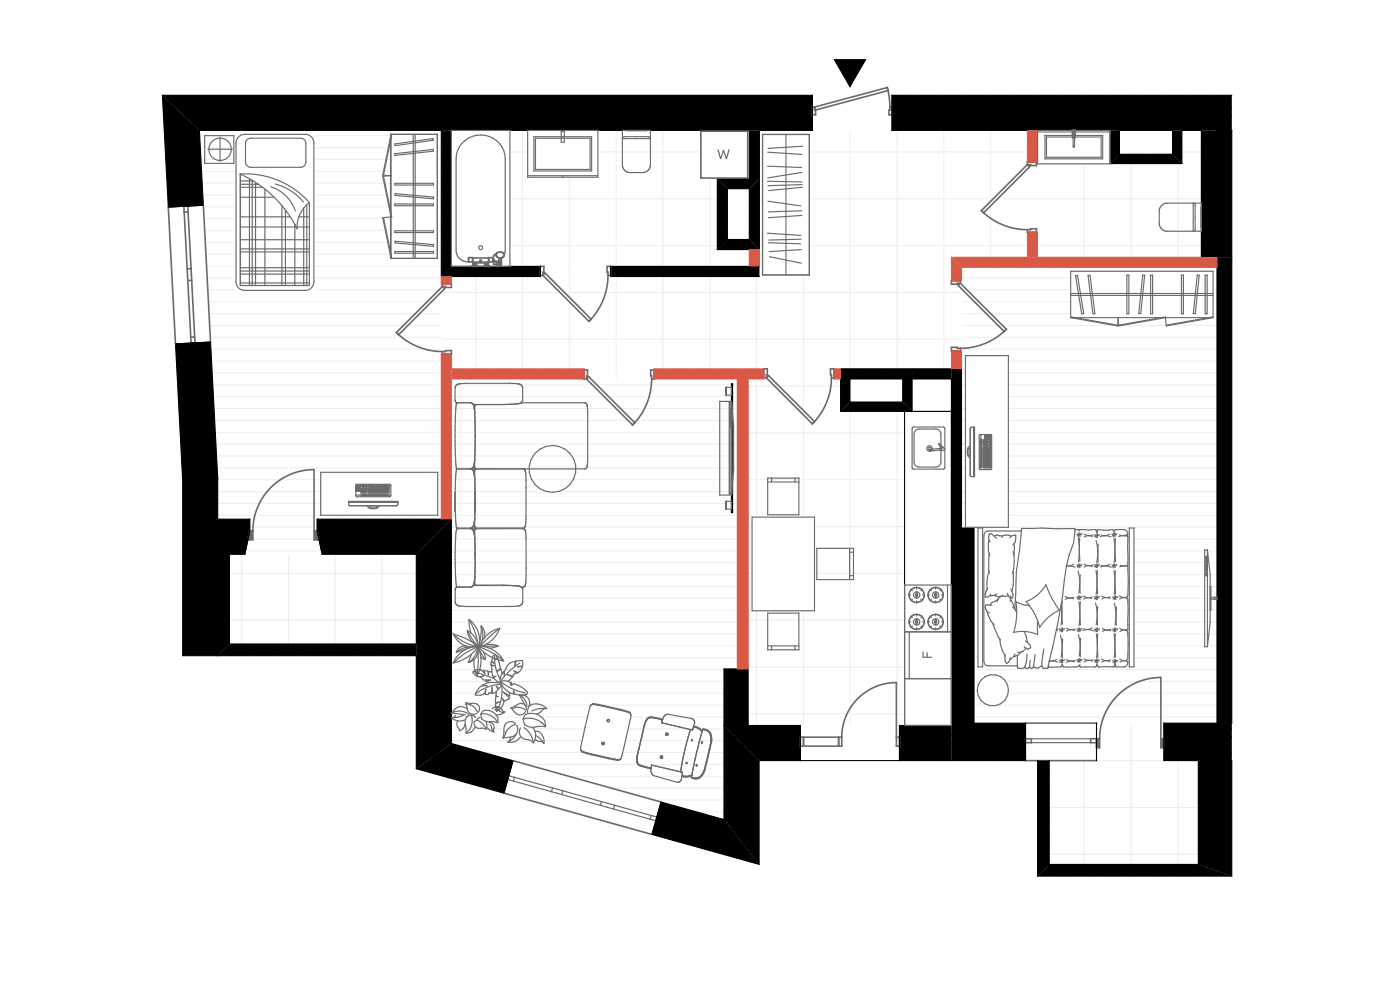 Druga opcja z większymi zmianami w układzie mieszkania